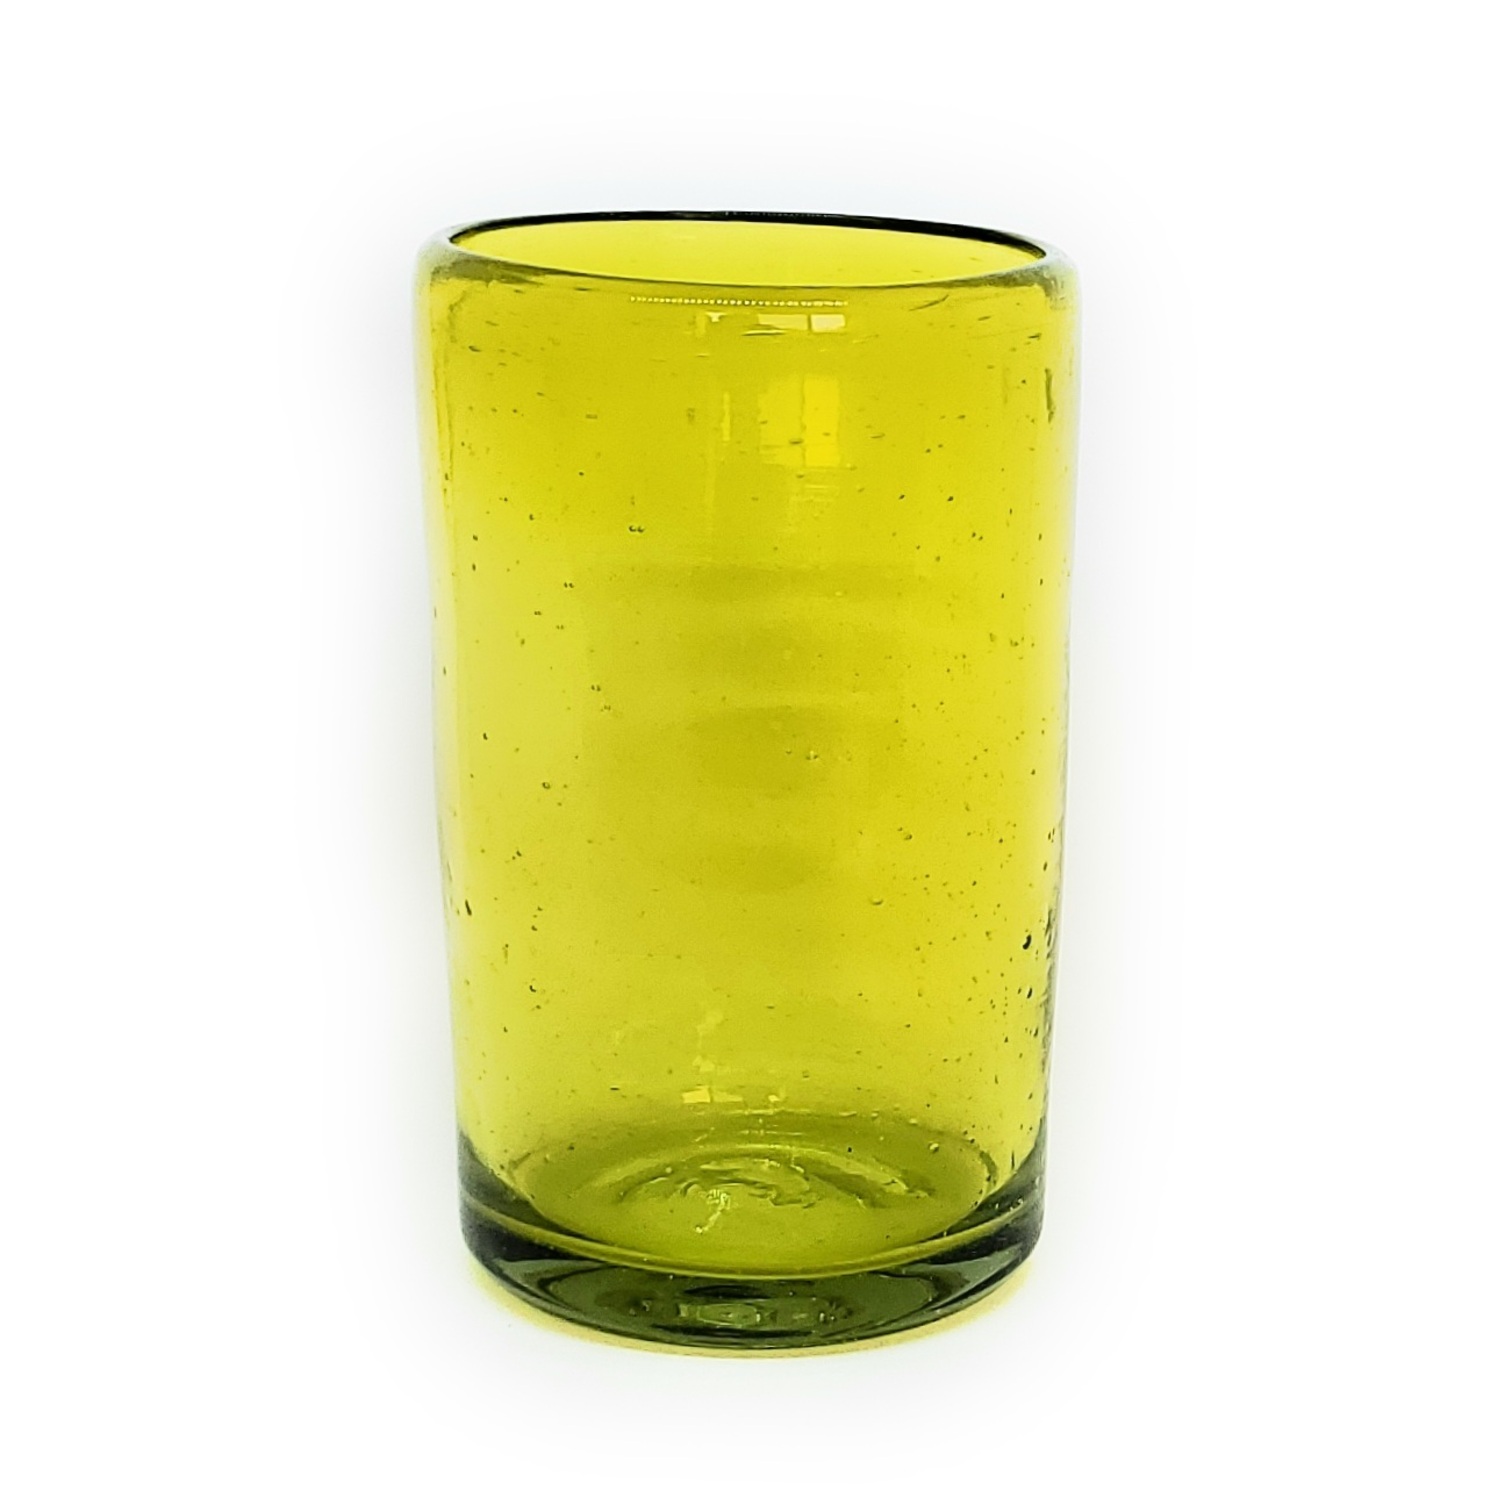 Colores Solidos / Juego de 6 vasos grandes color amarillos / Éstos artesanales vasos le darán un toque clásico a su bebida favorita.